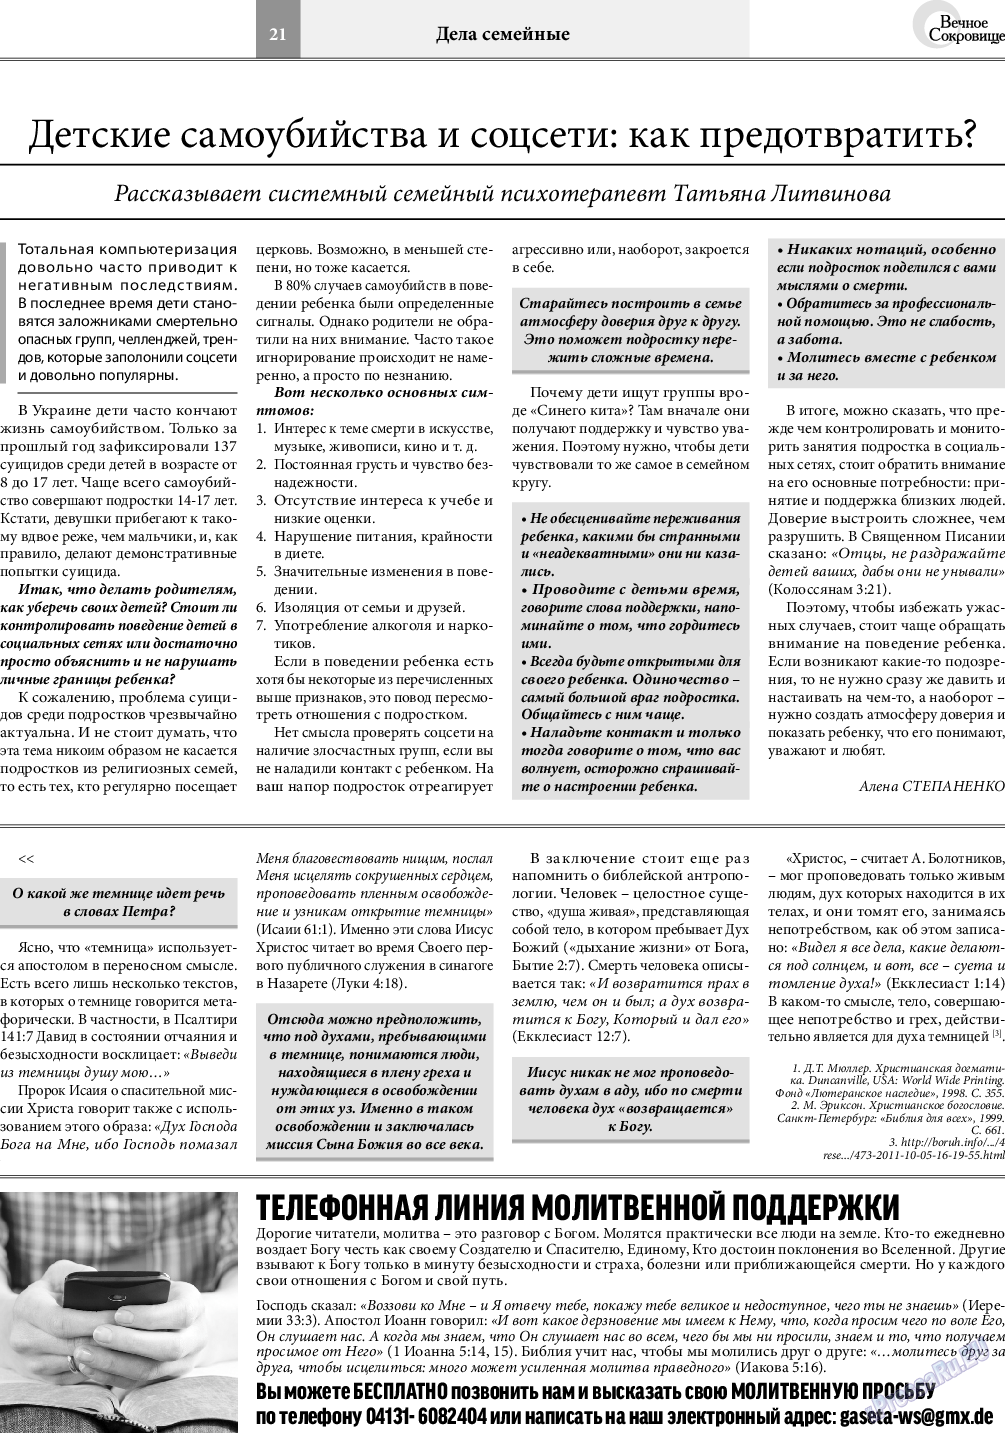 Вечное сокровище, газета. 2021 №2 стр.21